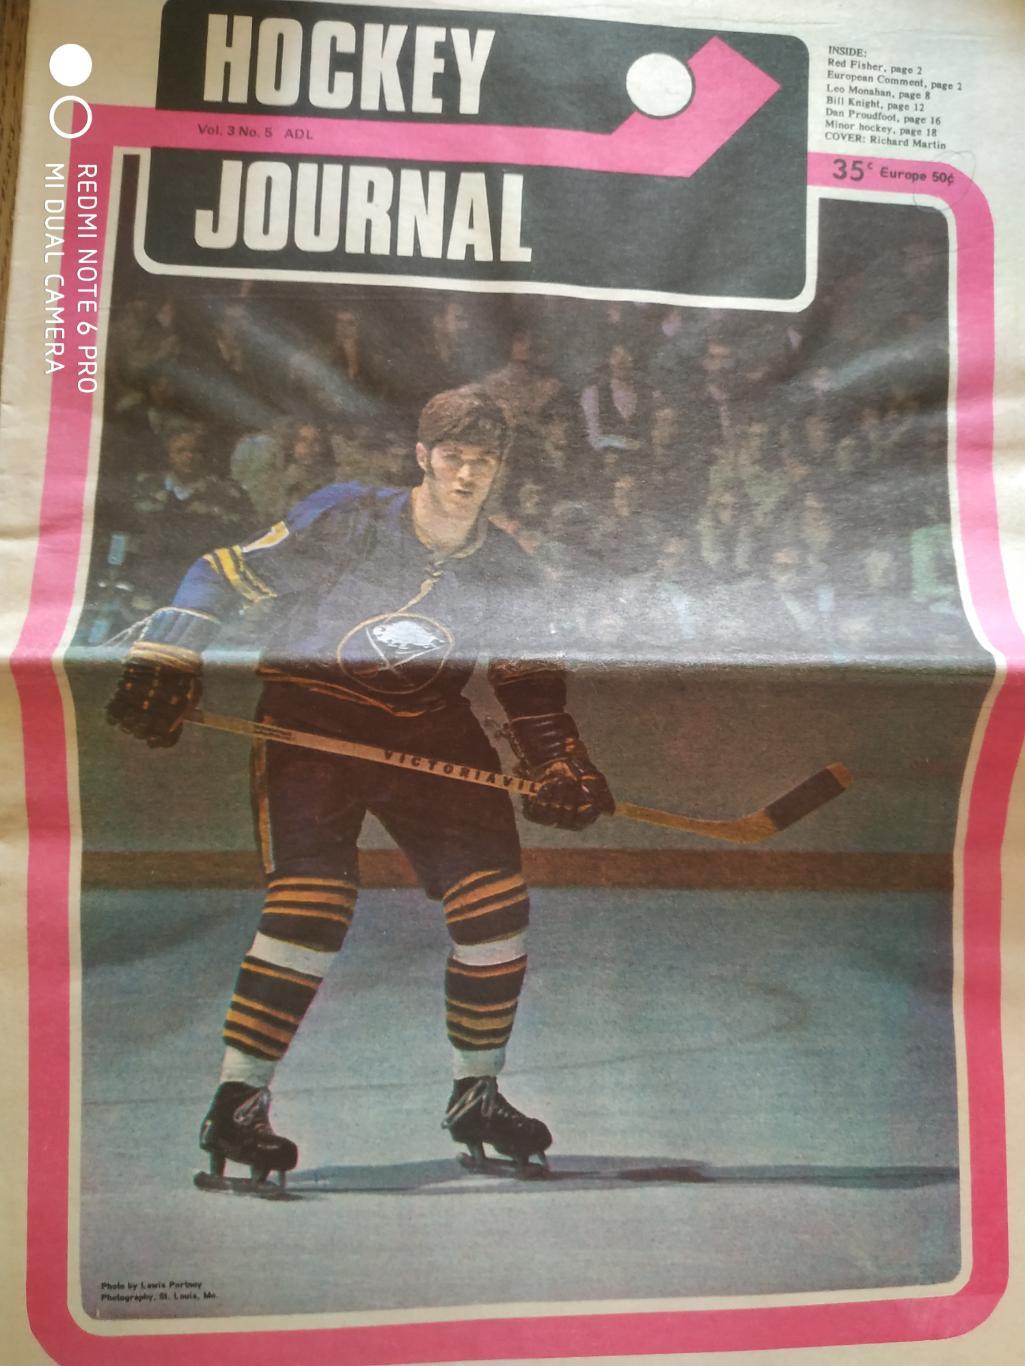 ГАЗЕТА ХОККЕЙ ЖУРНАЛ НХЛ NHL 1973 HOCKEY JOURNAL VOL.3 №5